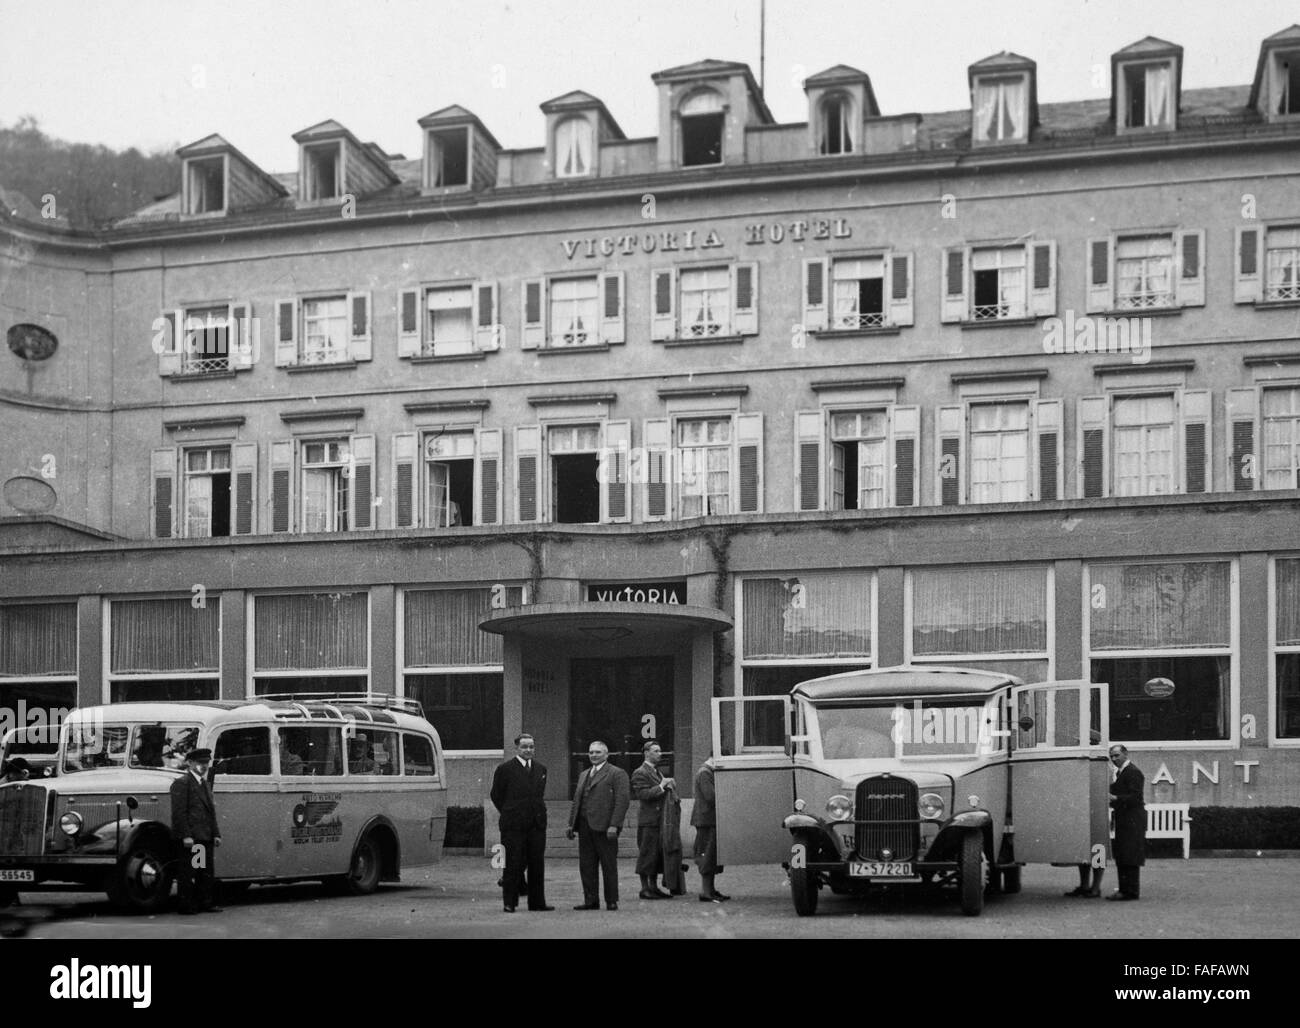 Reisebusse vor dem Hotel Victoria in Heidelberg, Deutschland 1930er Jahre. Pullman di fronte a Victoria hotel a Heidelberg, Germania 1930s. Foto Stock